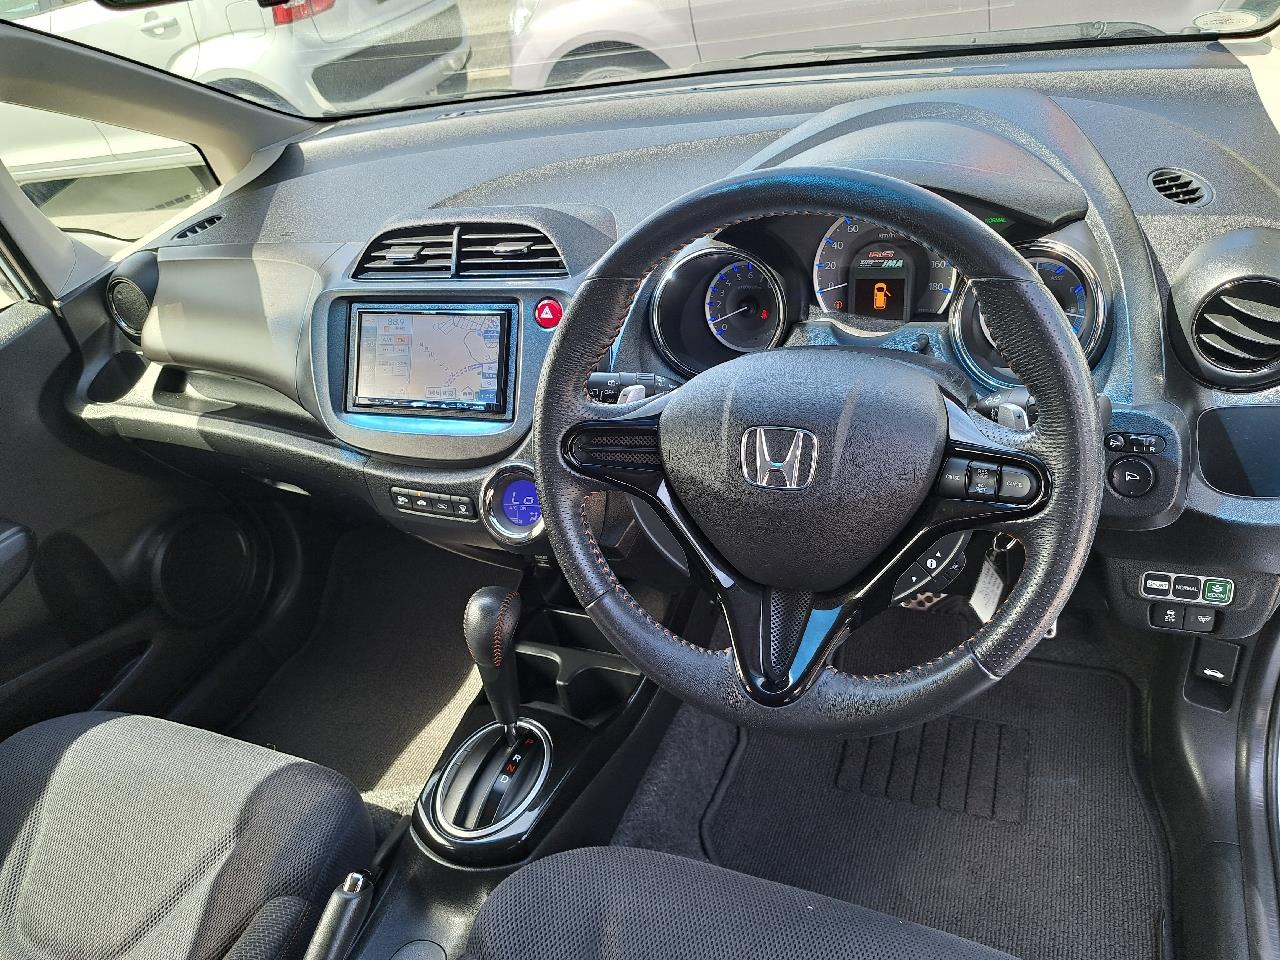 2013 Honda FIT